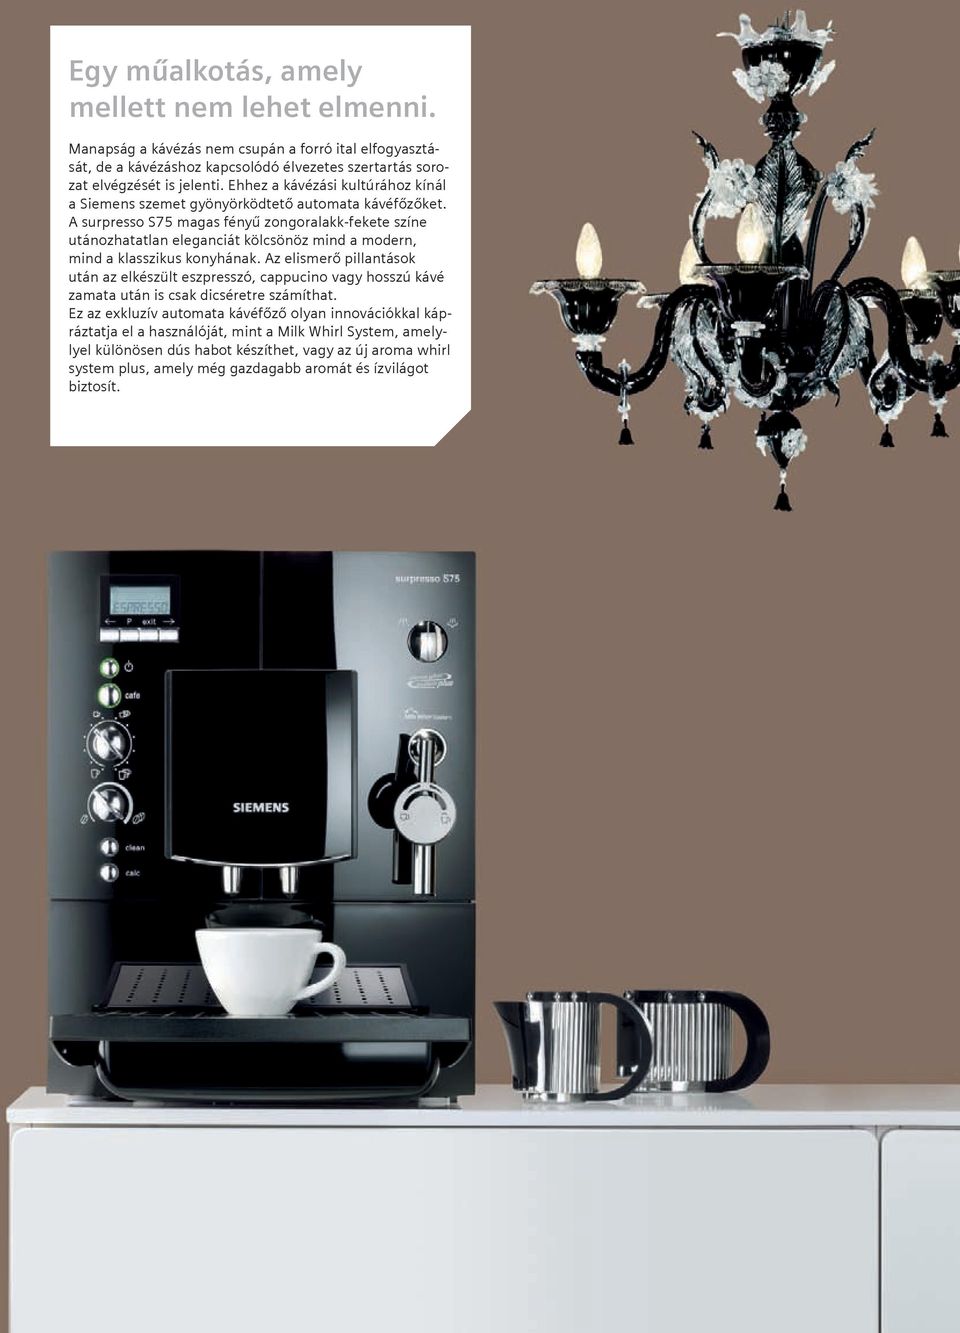 A surpresso S75 magas fényű zongoralakk-fekete színe utánozhatatlan eleganciát kölcsönöz mind a modern, mind a klasszikus konyhának.